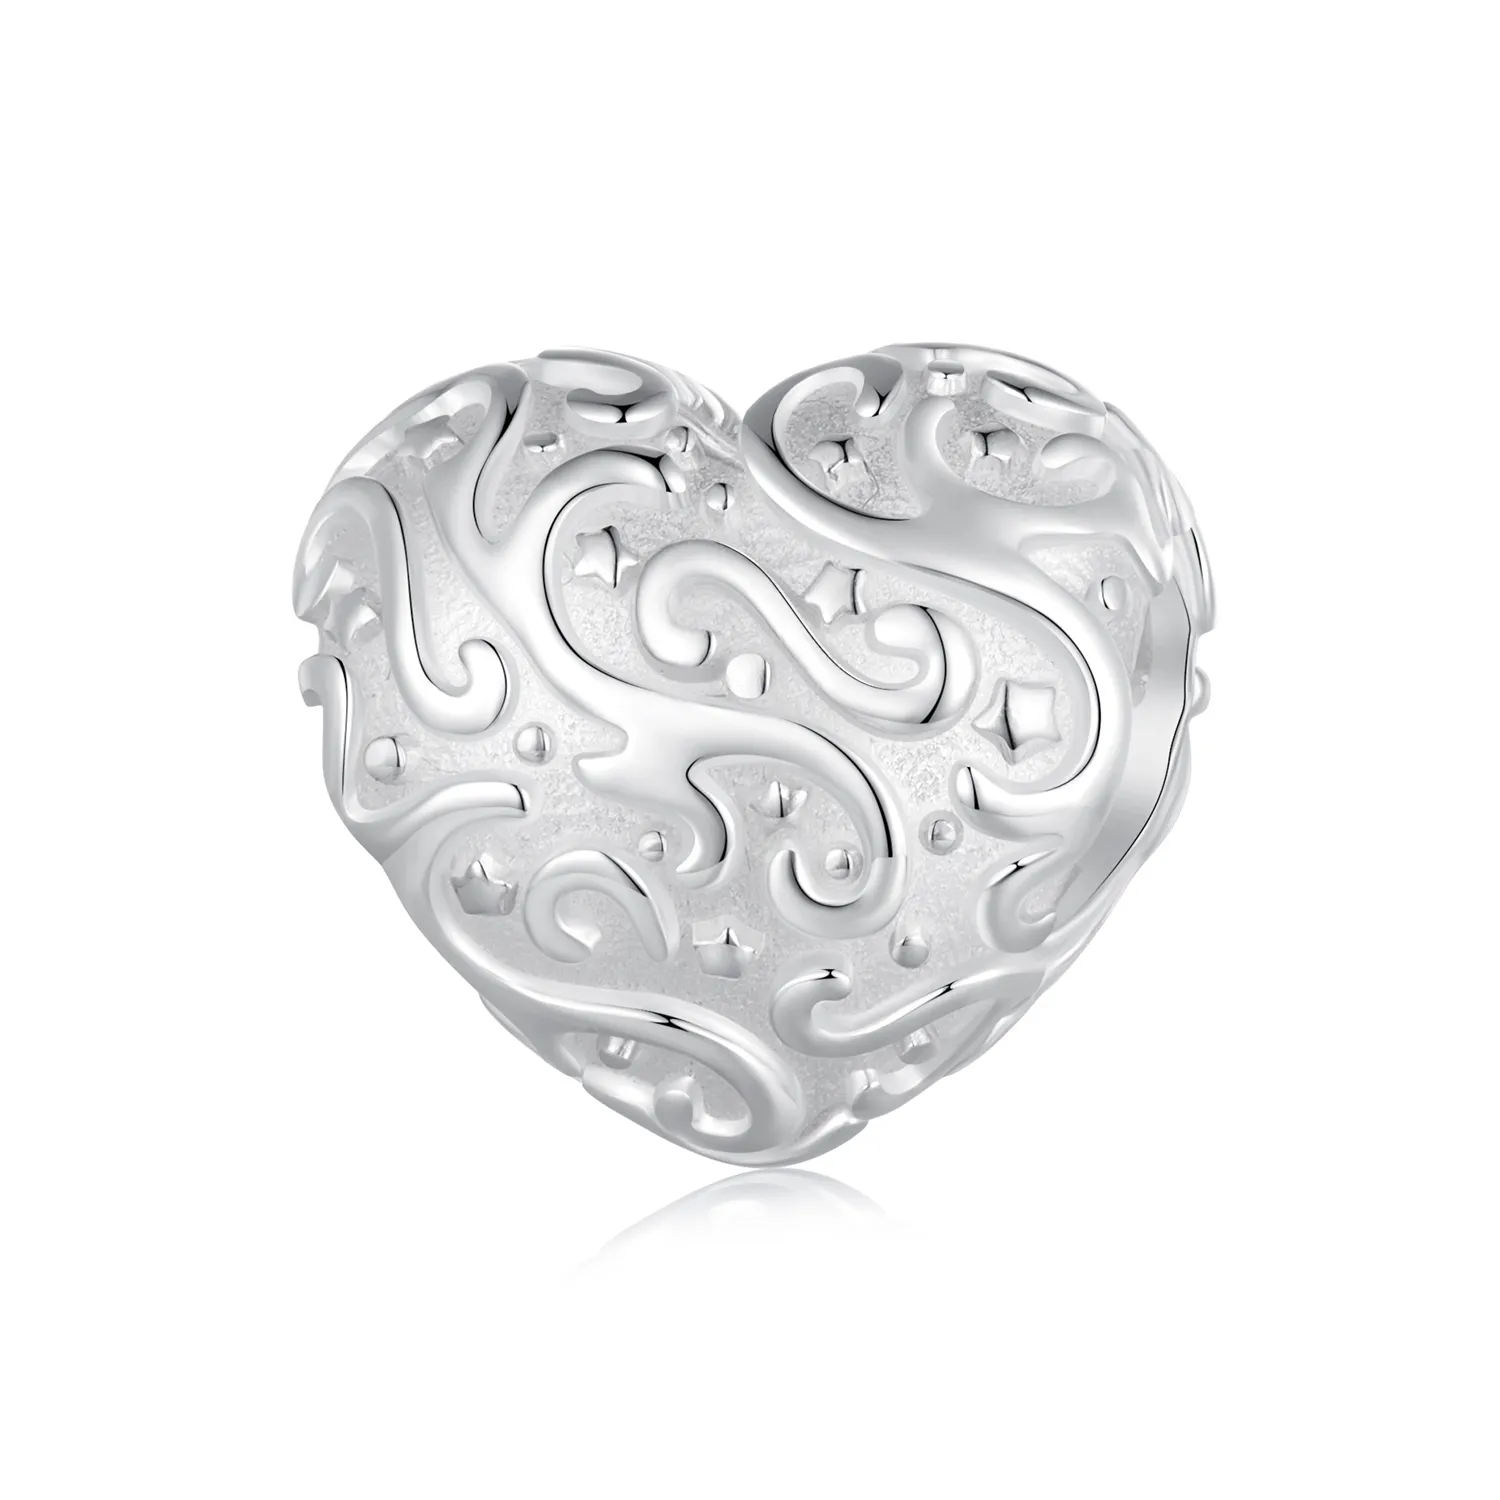 Pandora Stil Inimă Model Charm în formă de inimă - SCC2618